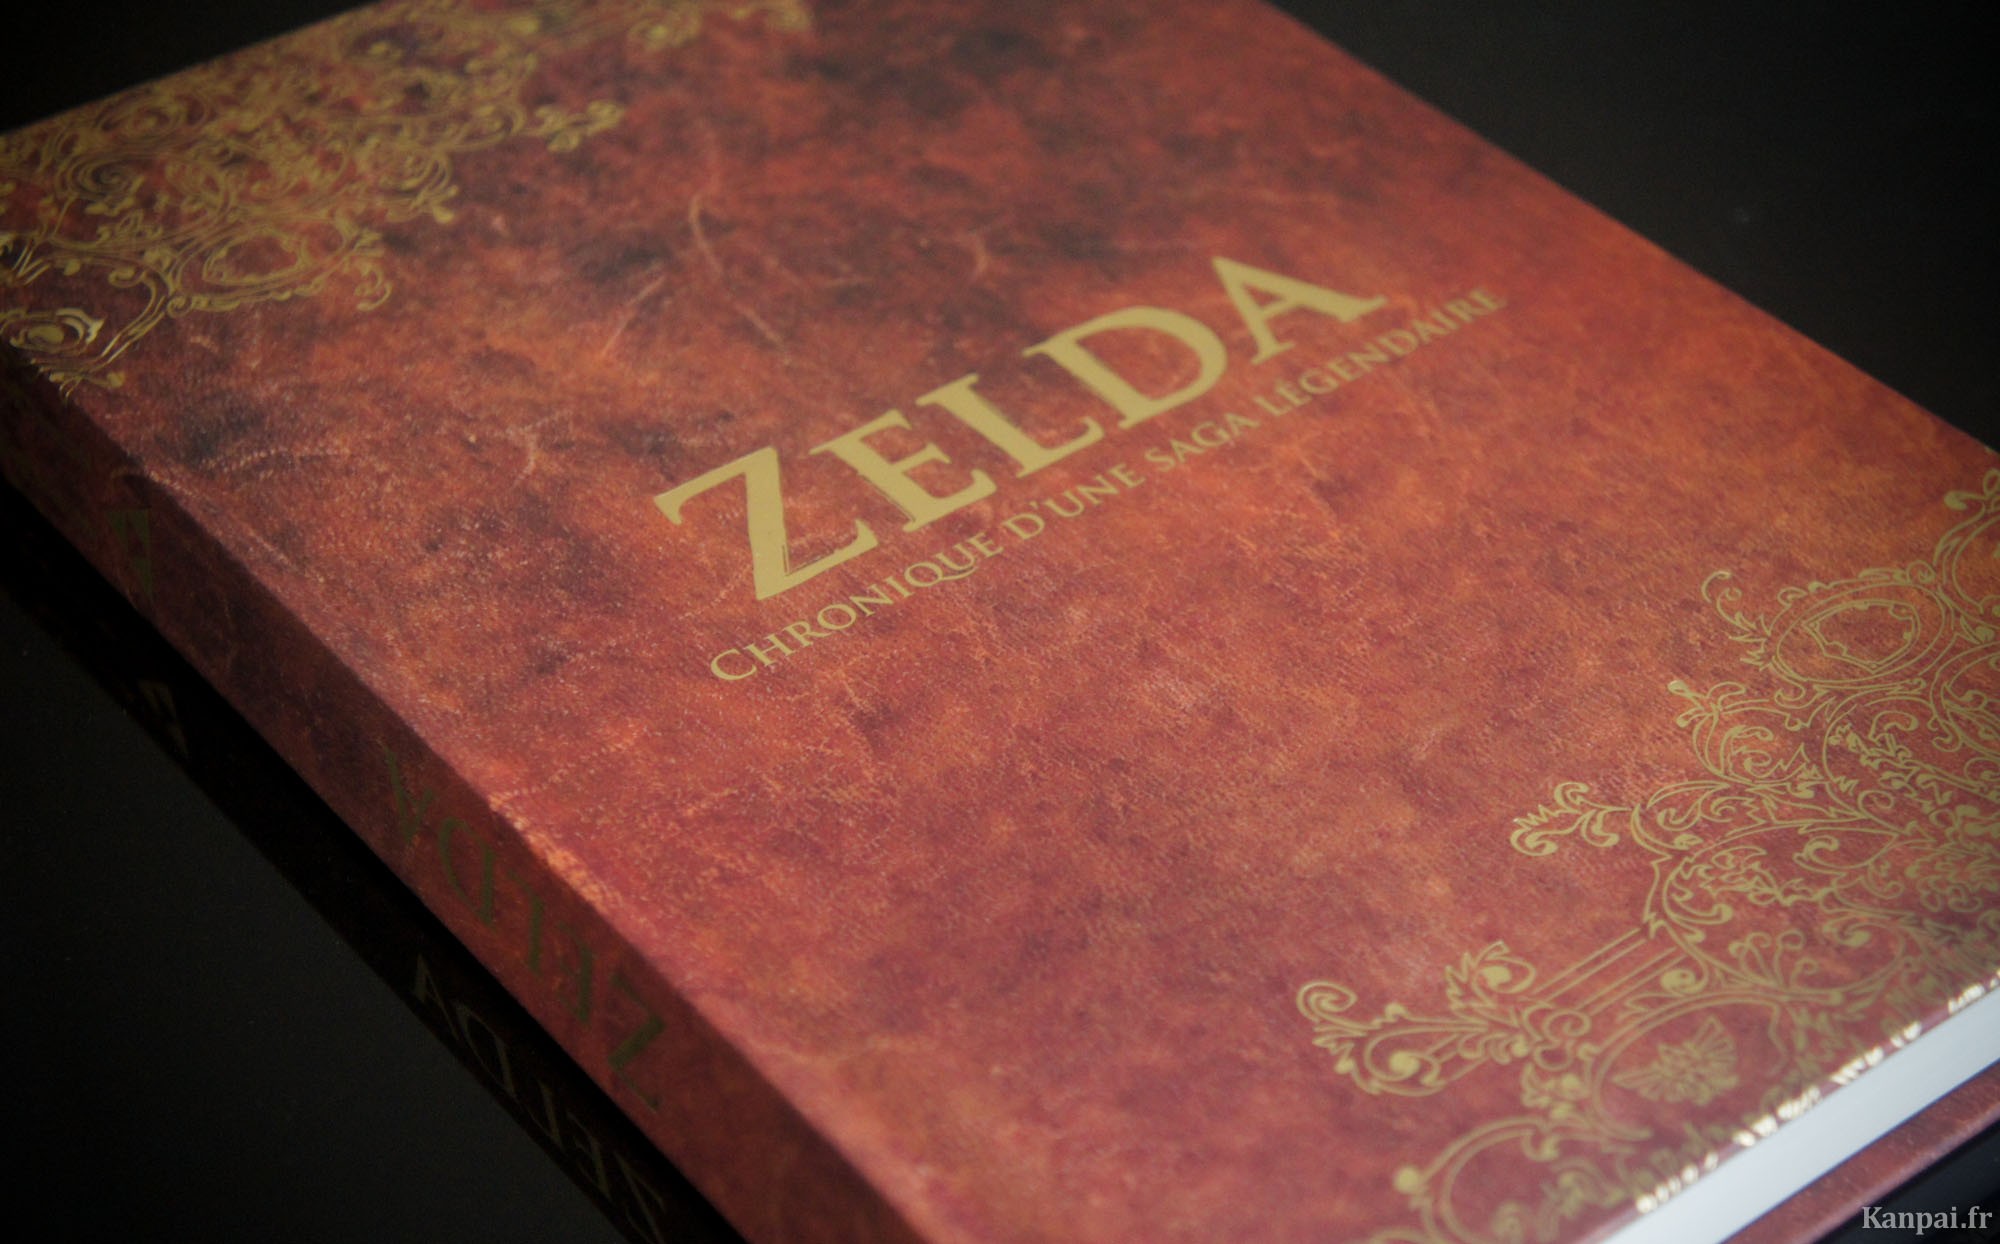 Zelda, chronique d'une saga légendaire (livre) - Console Syndrome Éditions